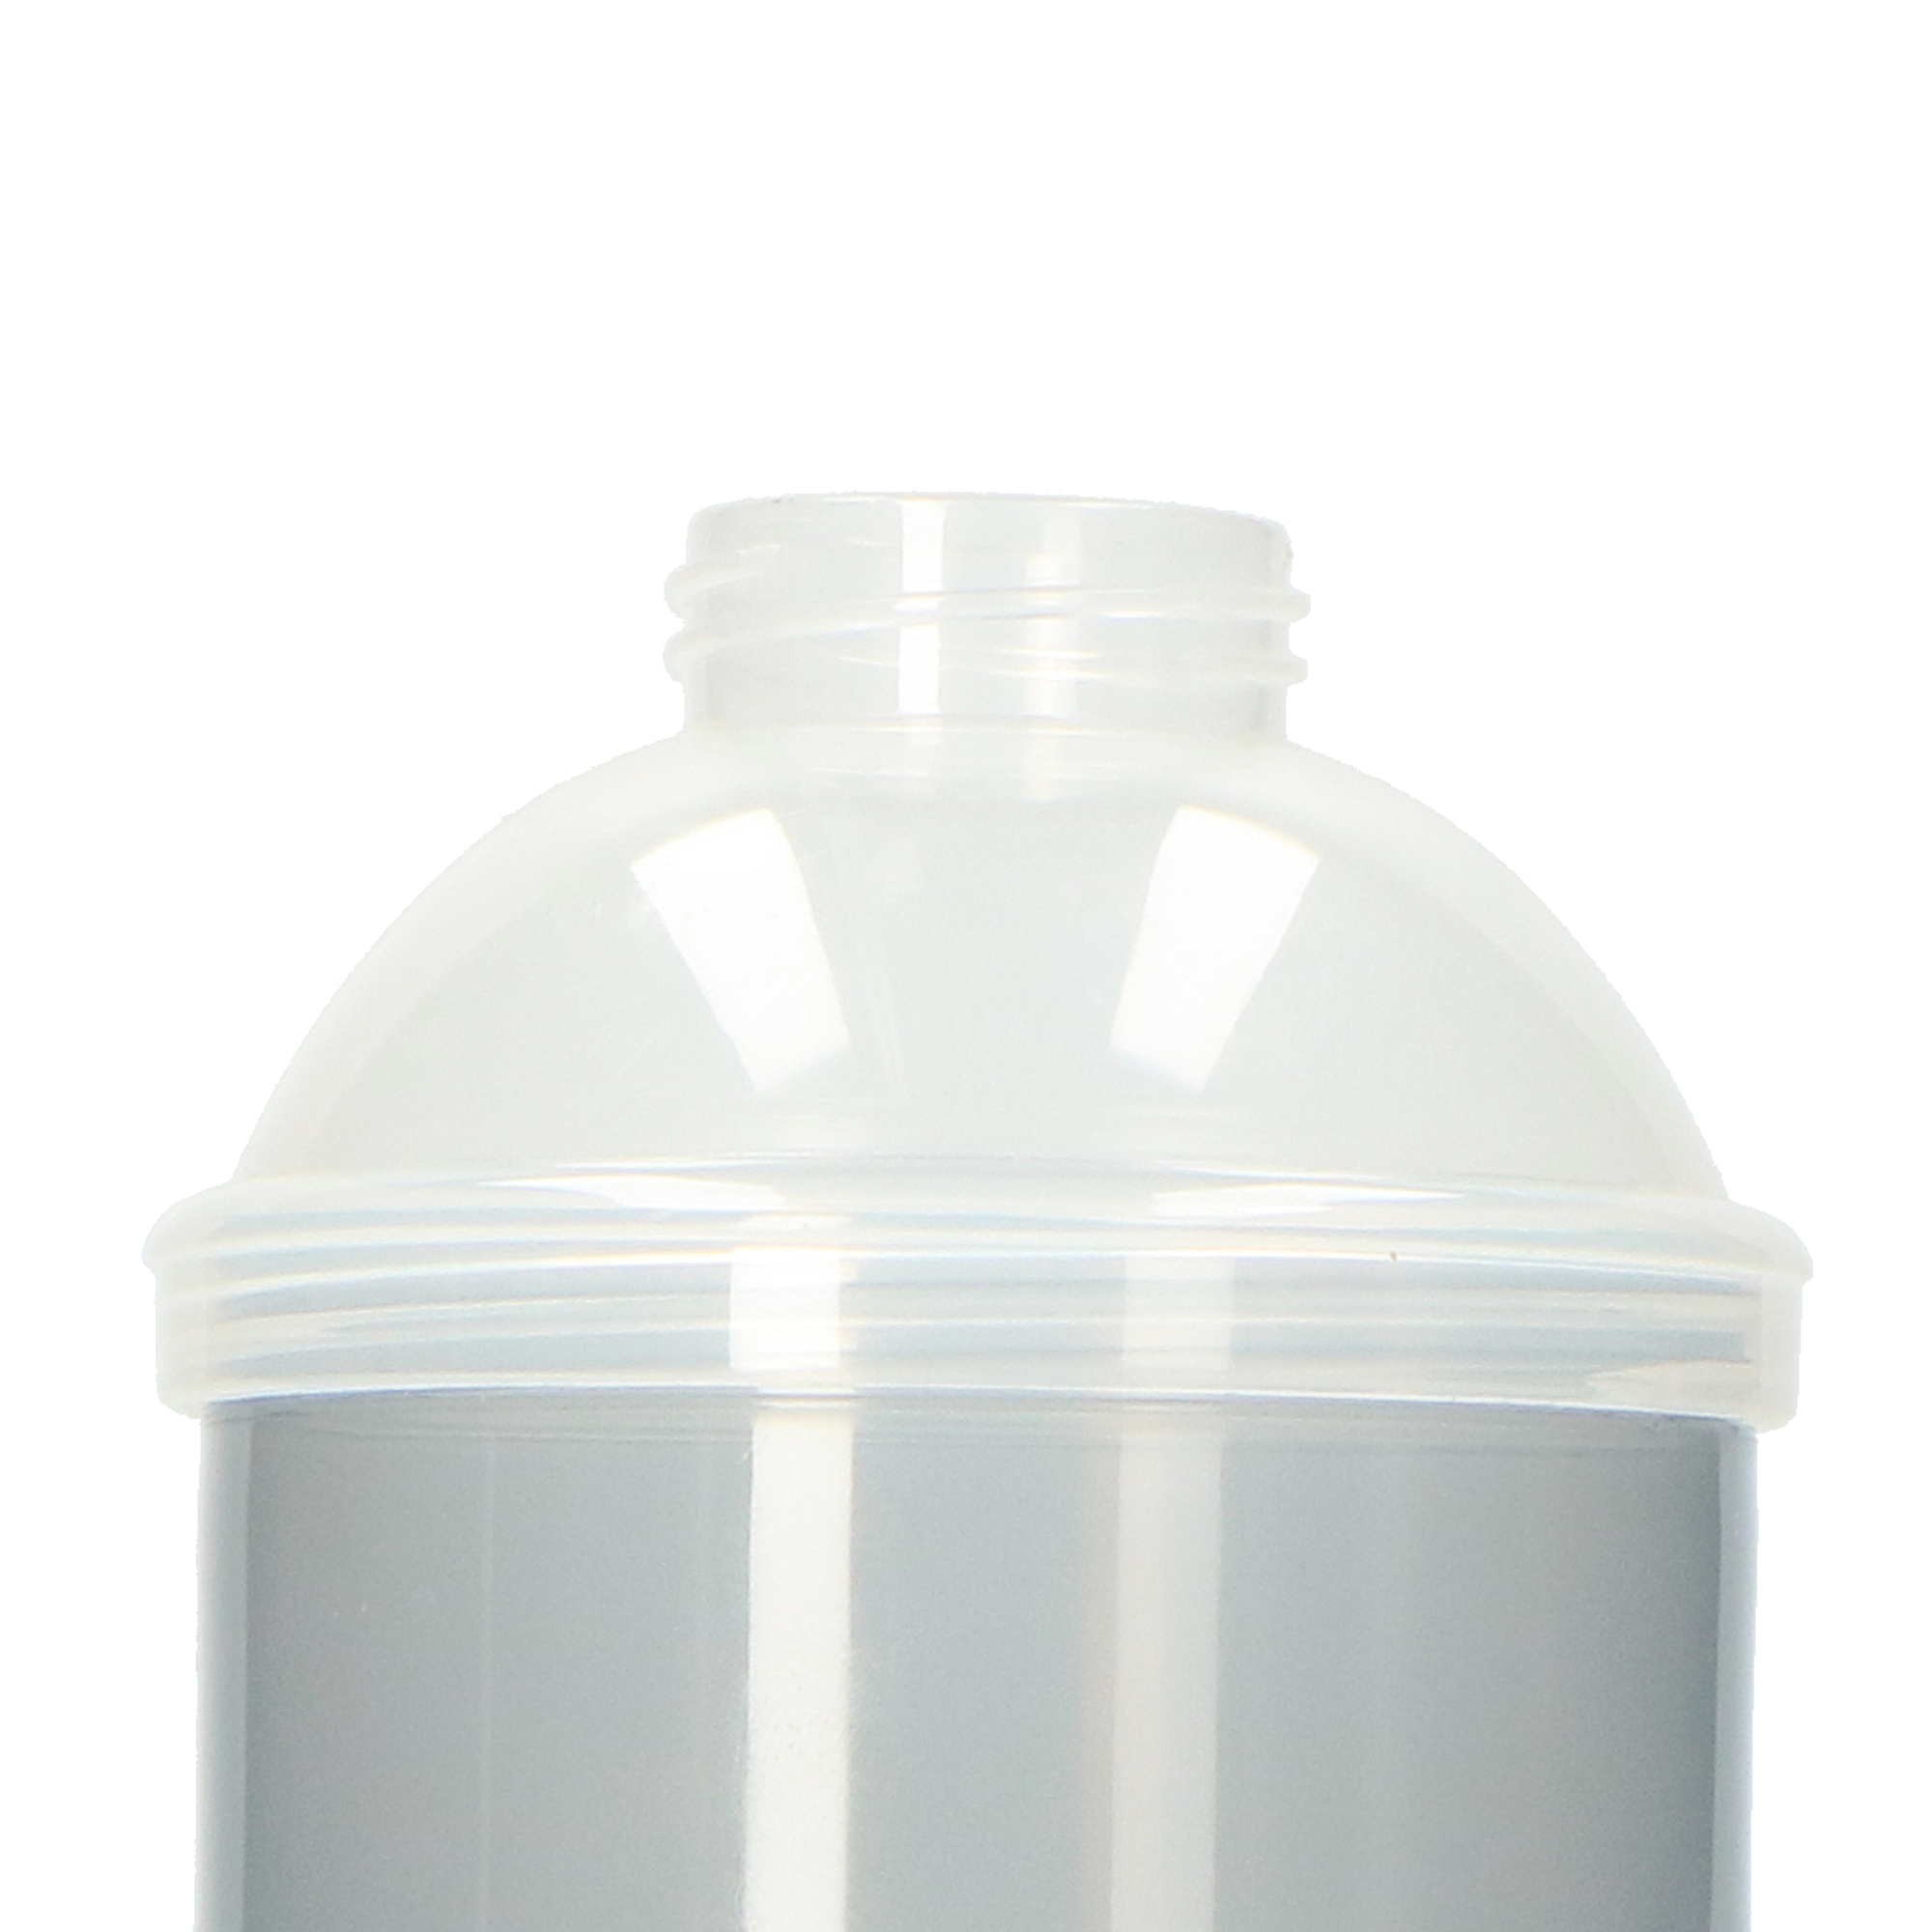 ALECTO BF-4 Milchpulver-Nahrungsspender Grau-Weiß